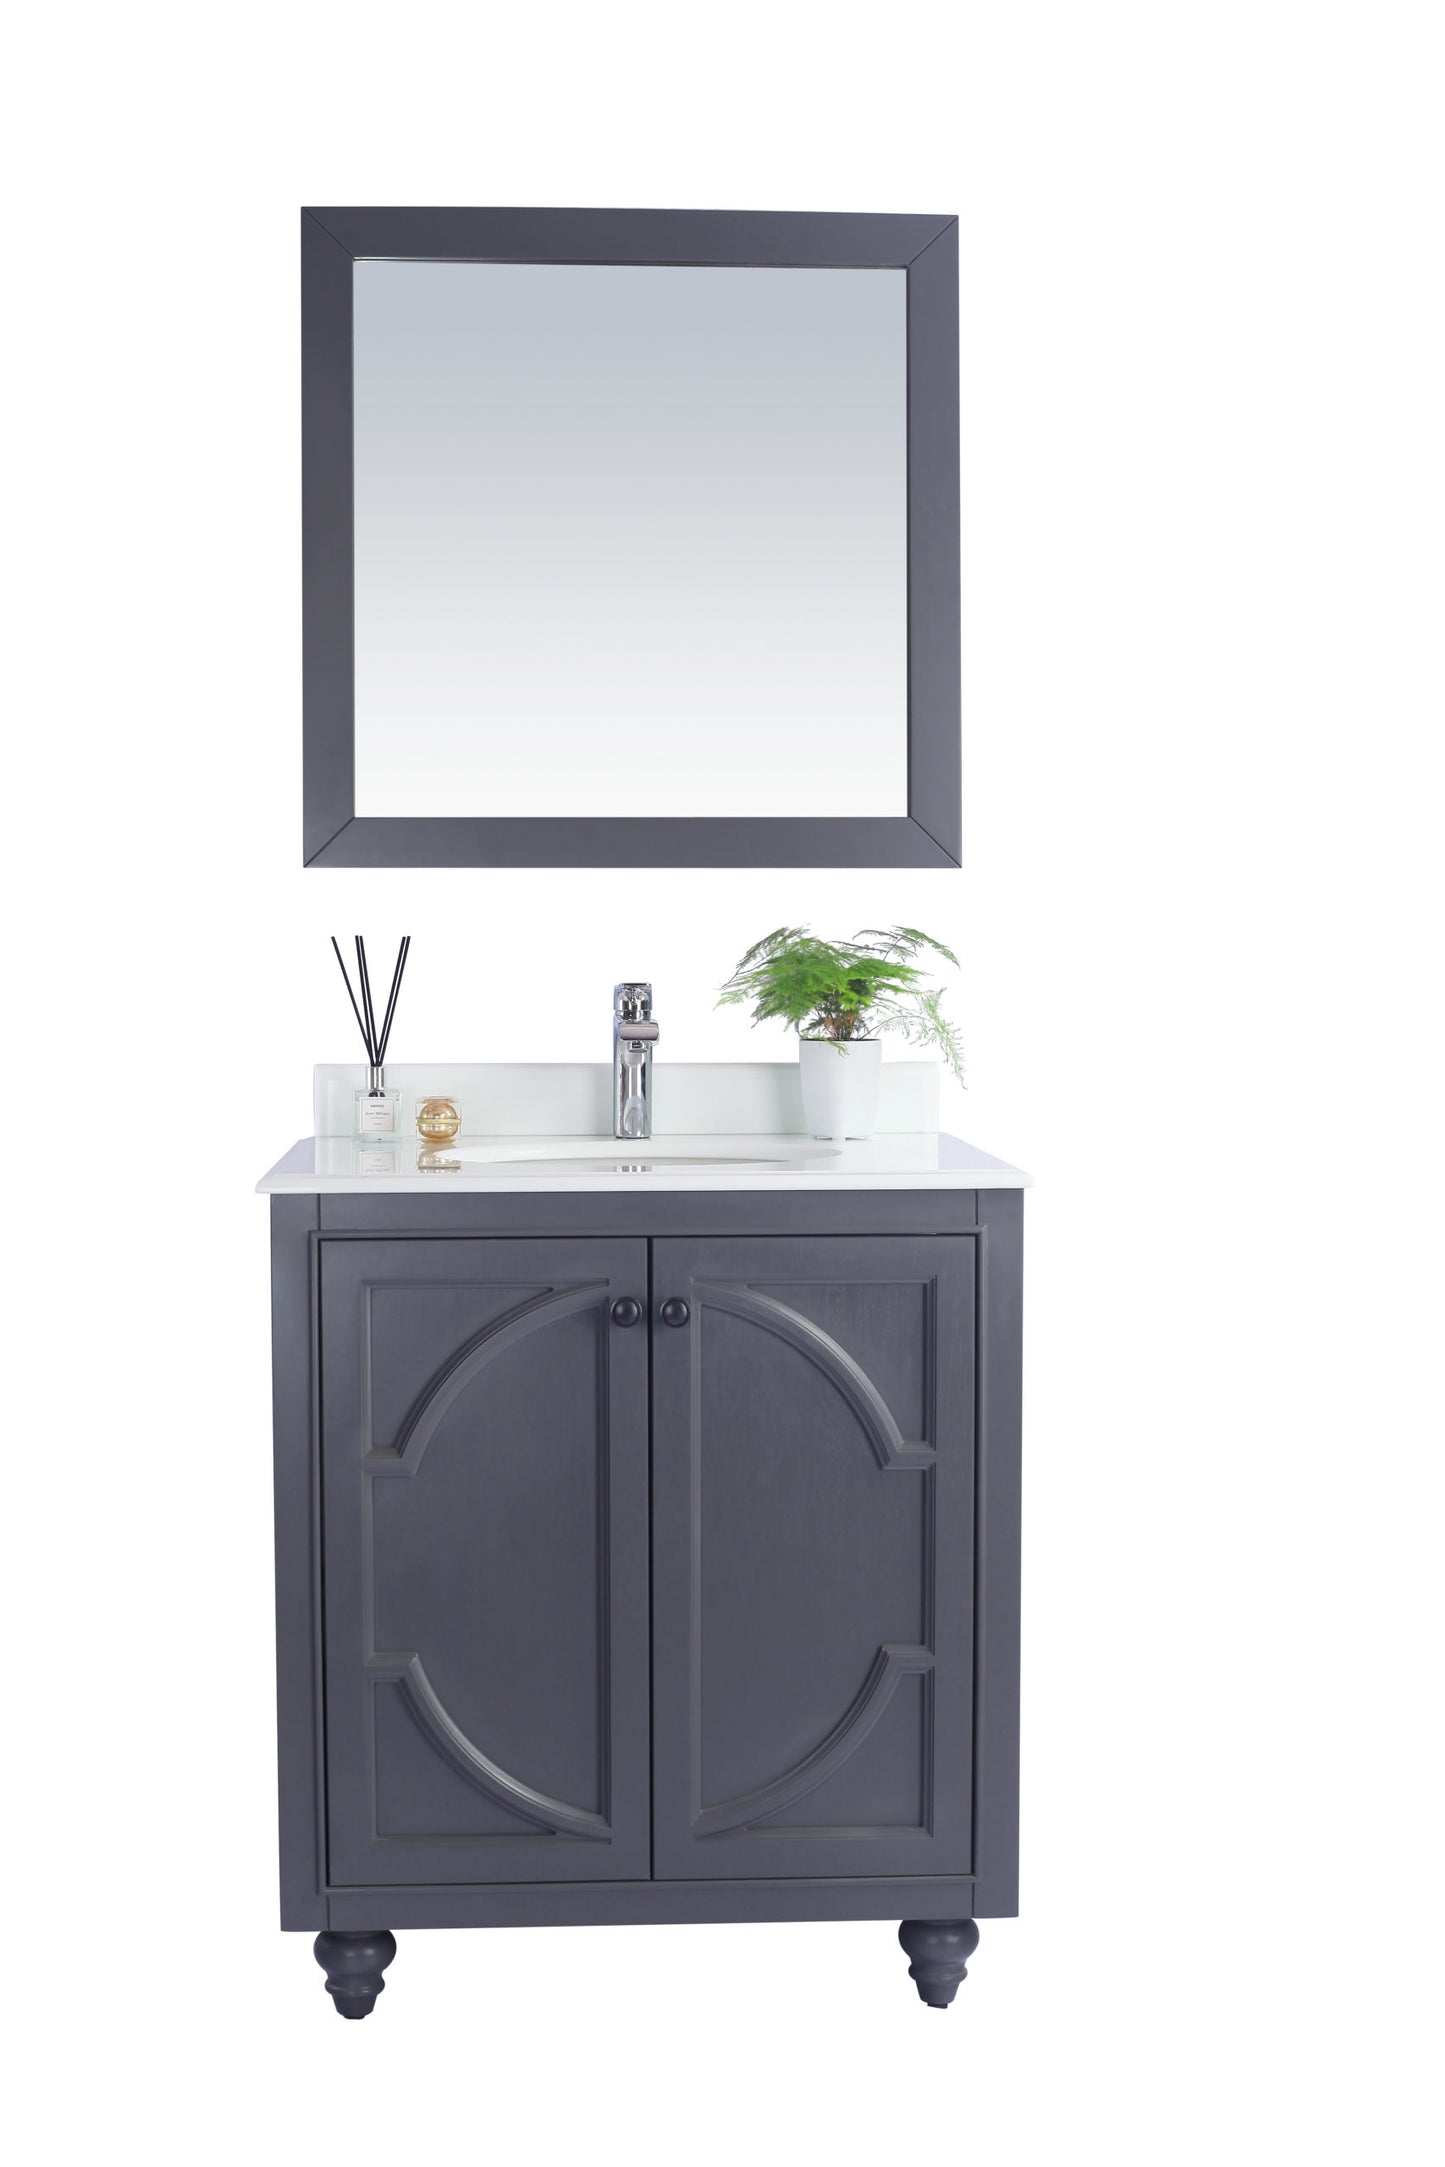 Odyssey 30" Maple Grey Bathroom Vanity with Pure White Phoenix Stone Countertop